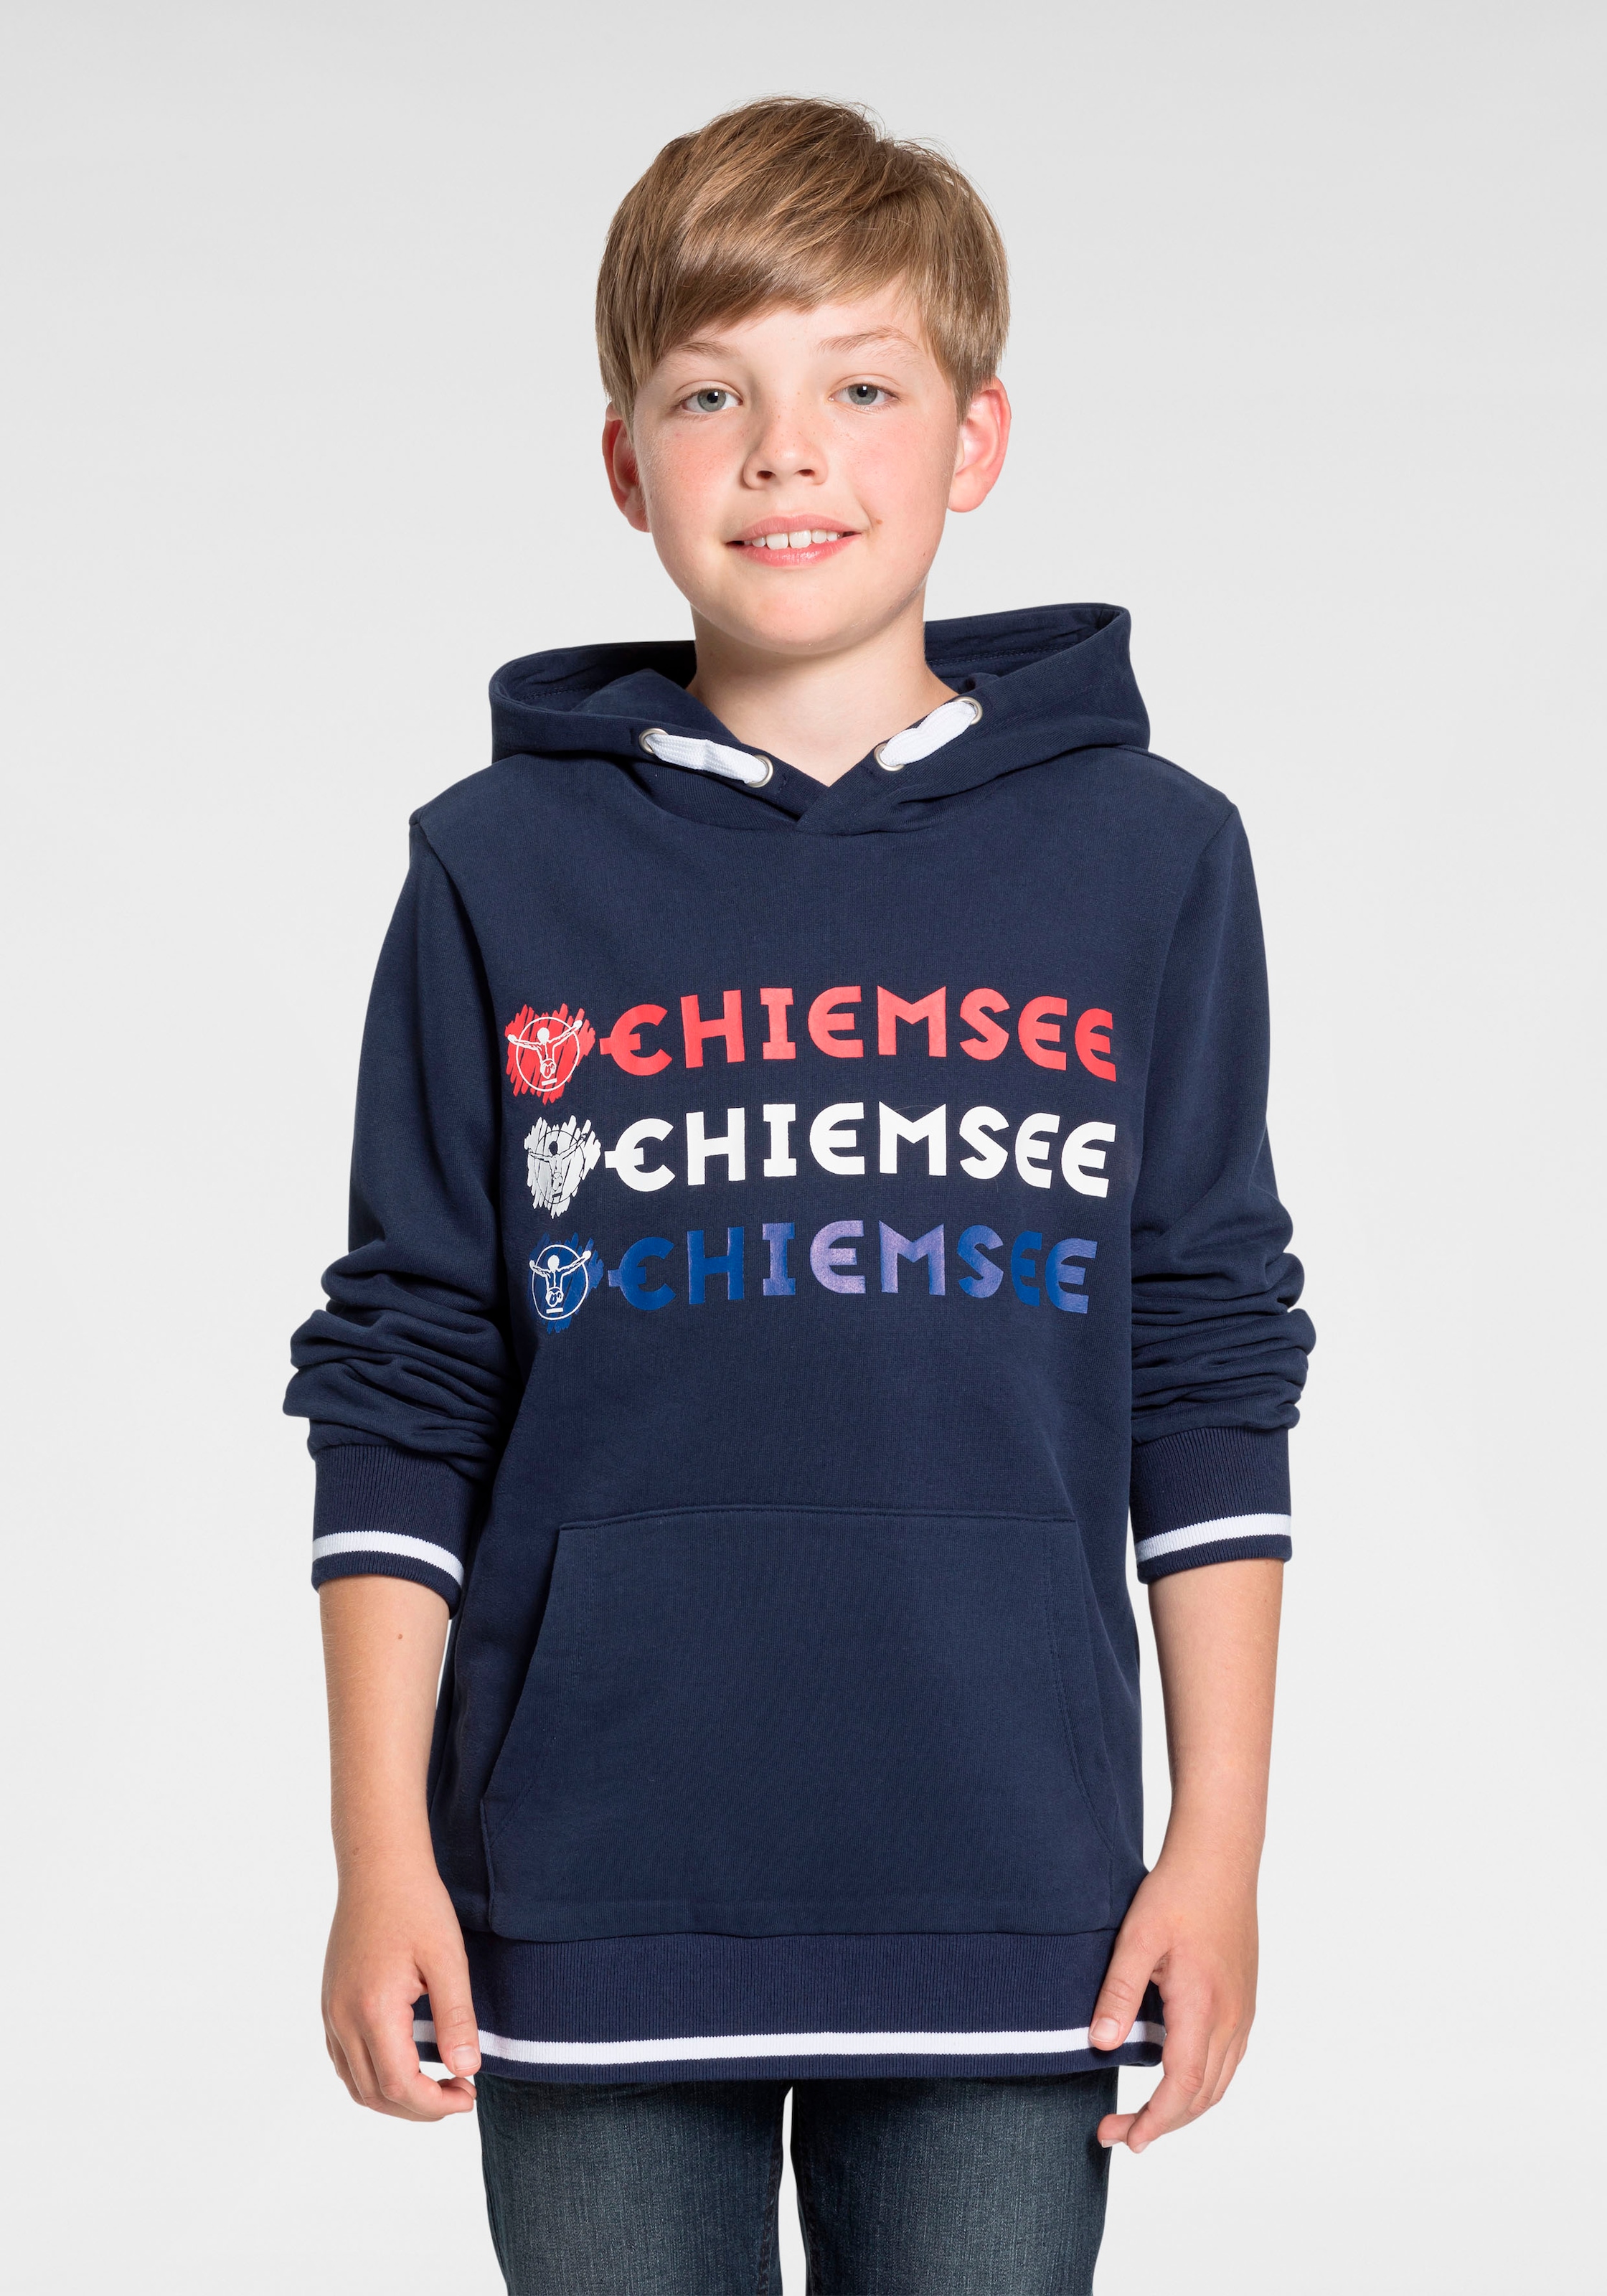 ♕ Chiemsee Kinder jetzt versandkostenfrei bei Ackermann Schweiz shoppen